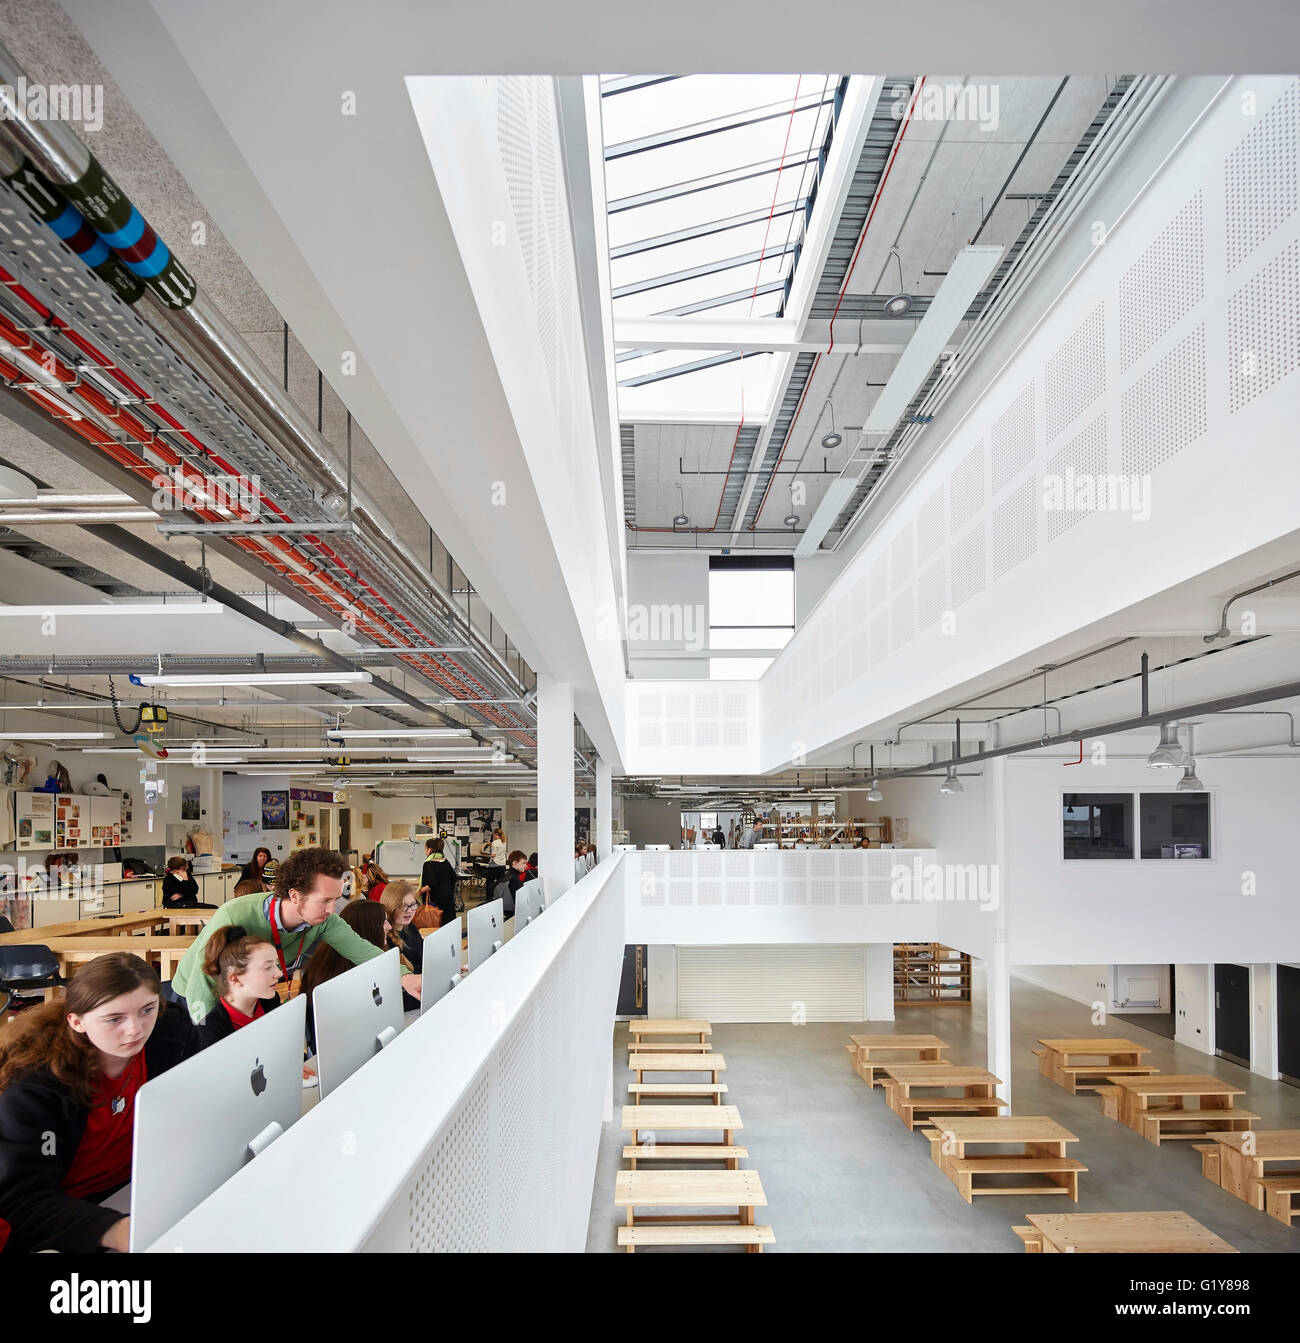 Im ersten Stock es Schreibtisch mit Blick auf doppelter Höhe Volumen. Plymouth Creative School of Art, Plymouth, Vereinigtes Königreich. Architekt: Feilden Clegg Bradley Studios LLP, 2015. Stockfoto